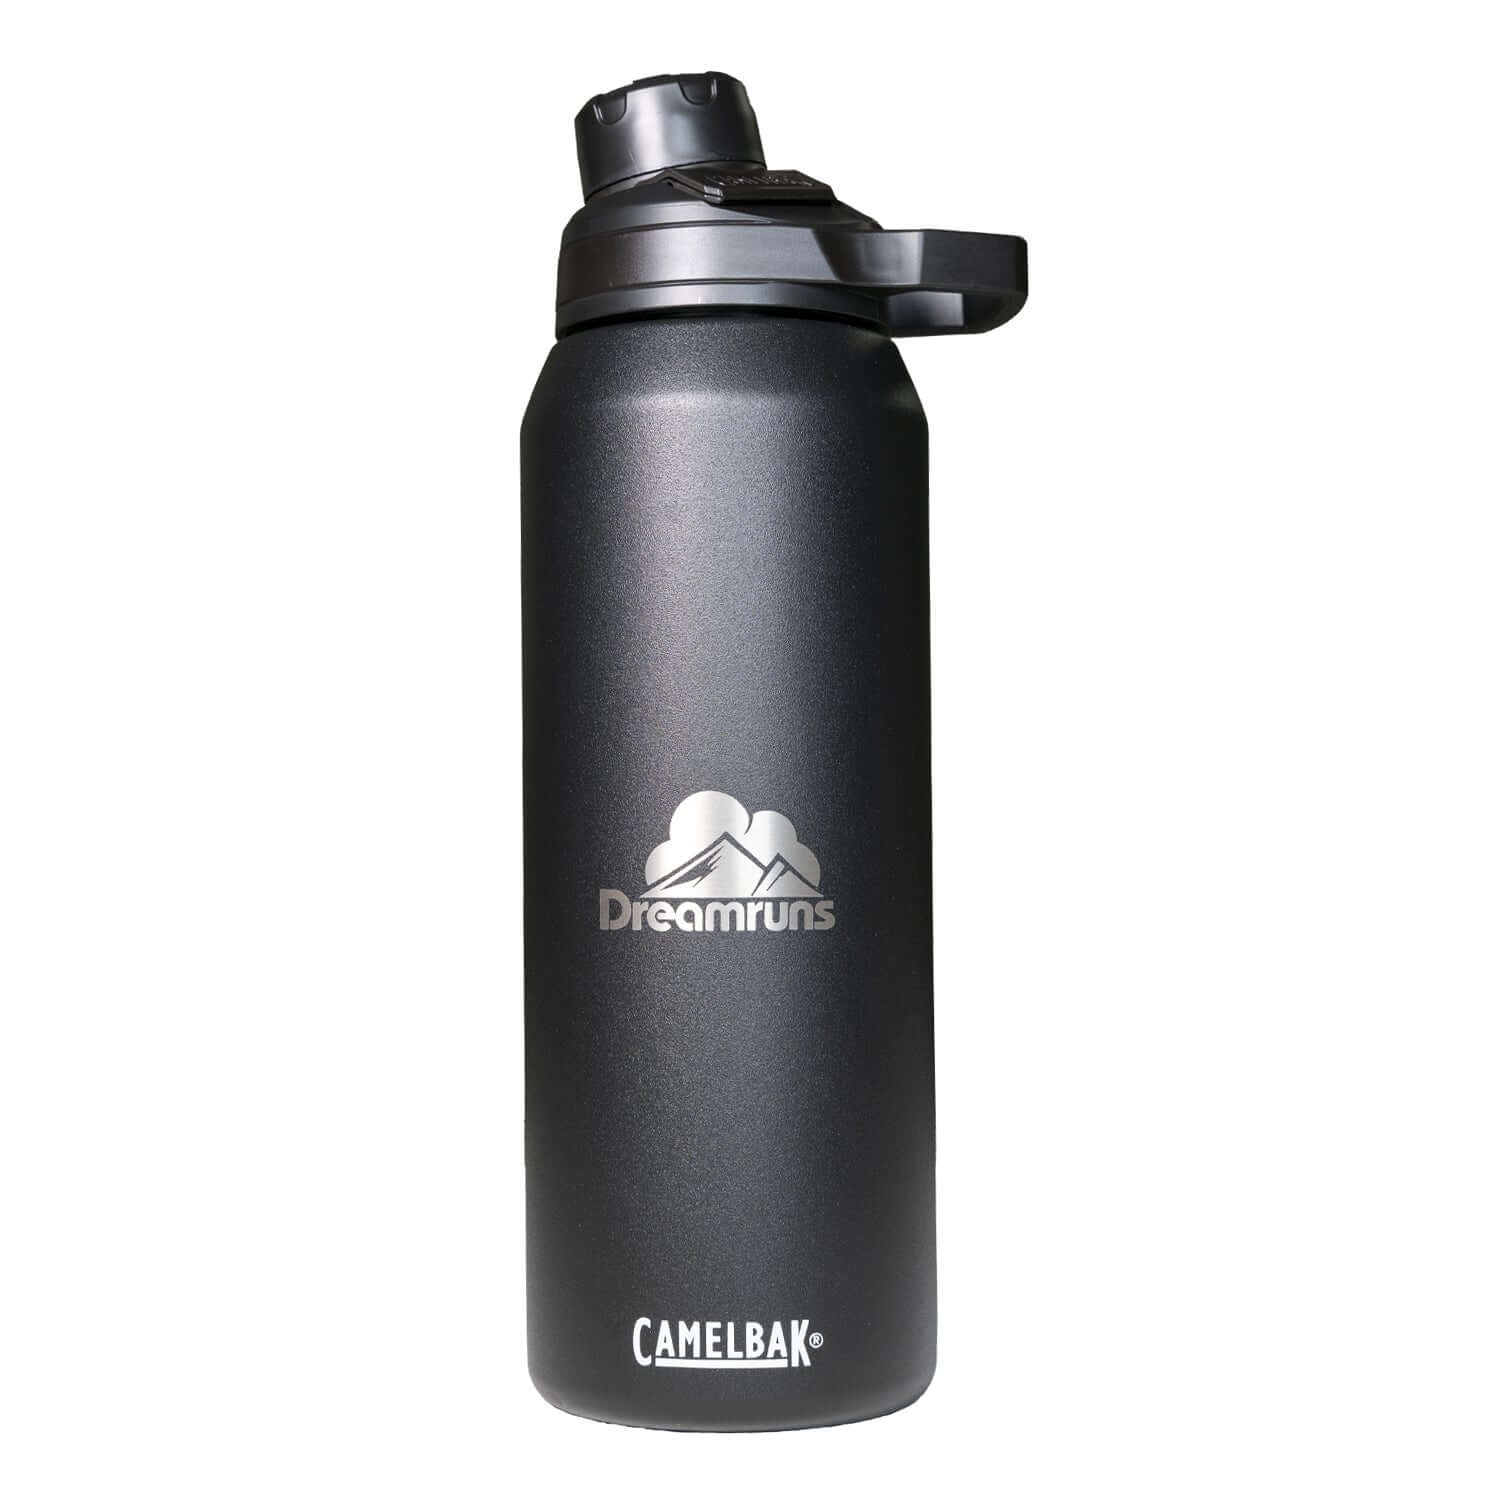 Dreamruns CamelBak Chute Mag Vacuum Stainless Steel Bottle 3 – Dreamruns.com